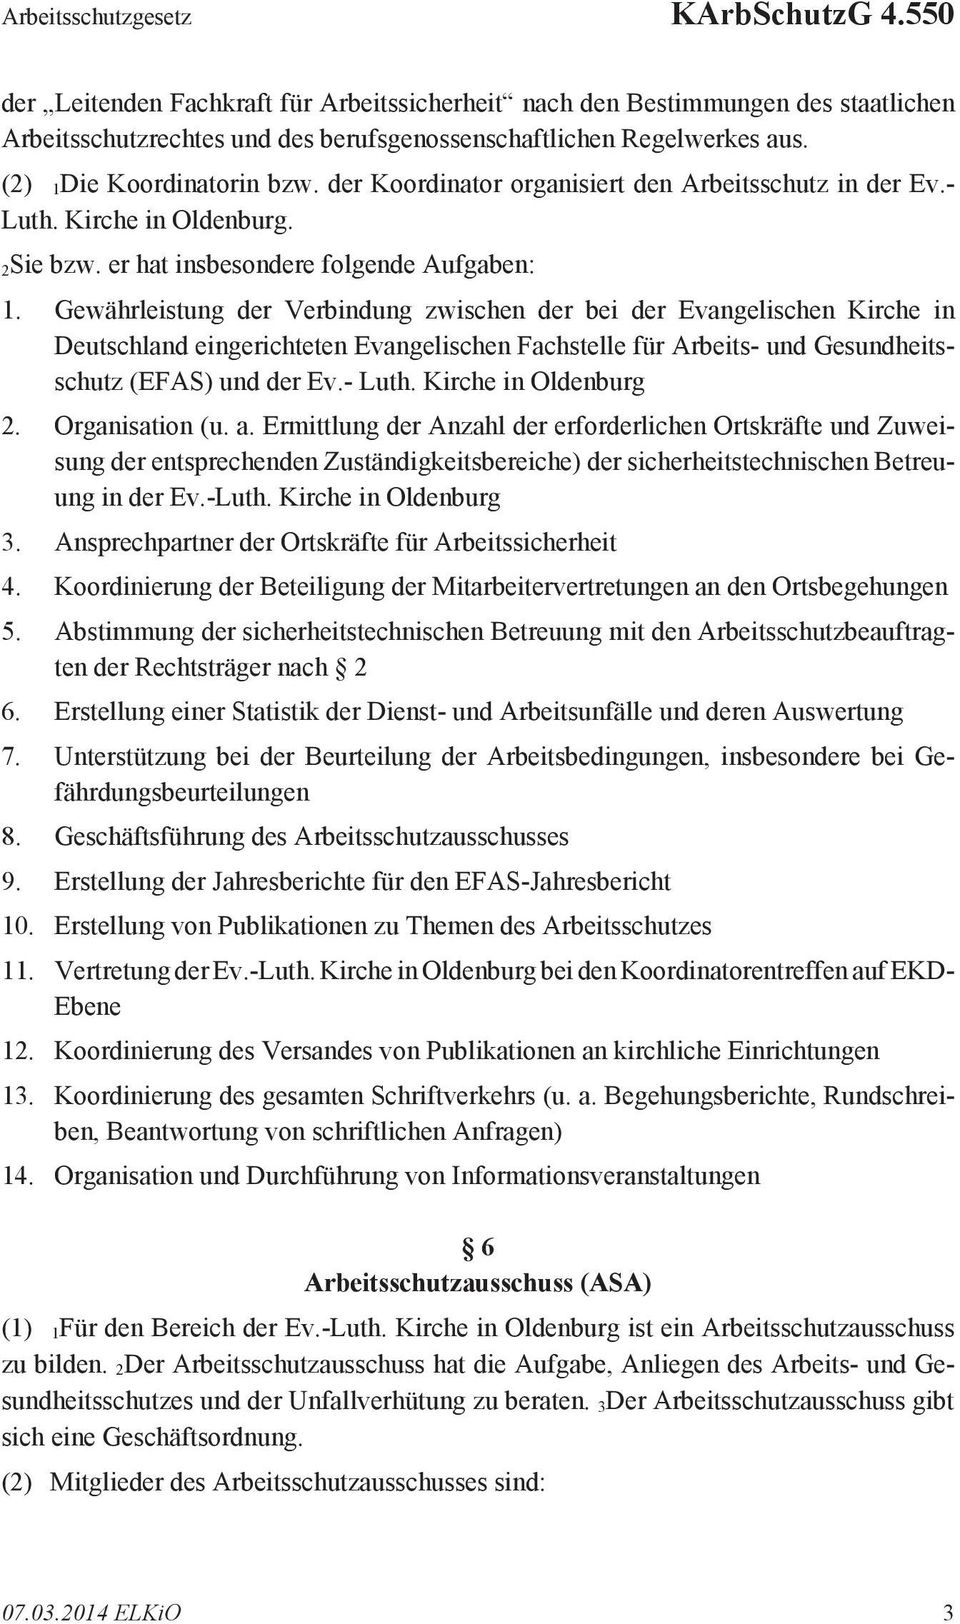 Gewährleistung der Verbindung zwischen der bei der Evangelischen Kirche in Deutschland eingerichteten Evangelischen Fachstelle für Arbeits- und Gesundheitsschutz (EFAS) und der Ev.- Luth.